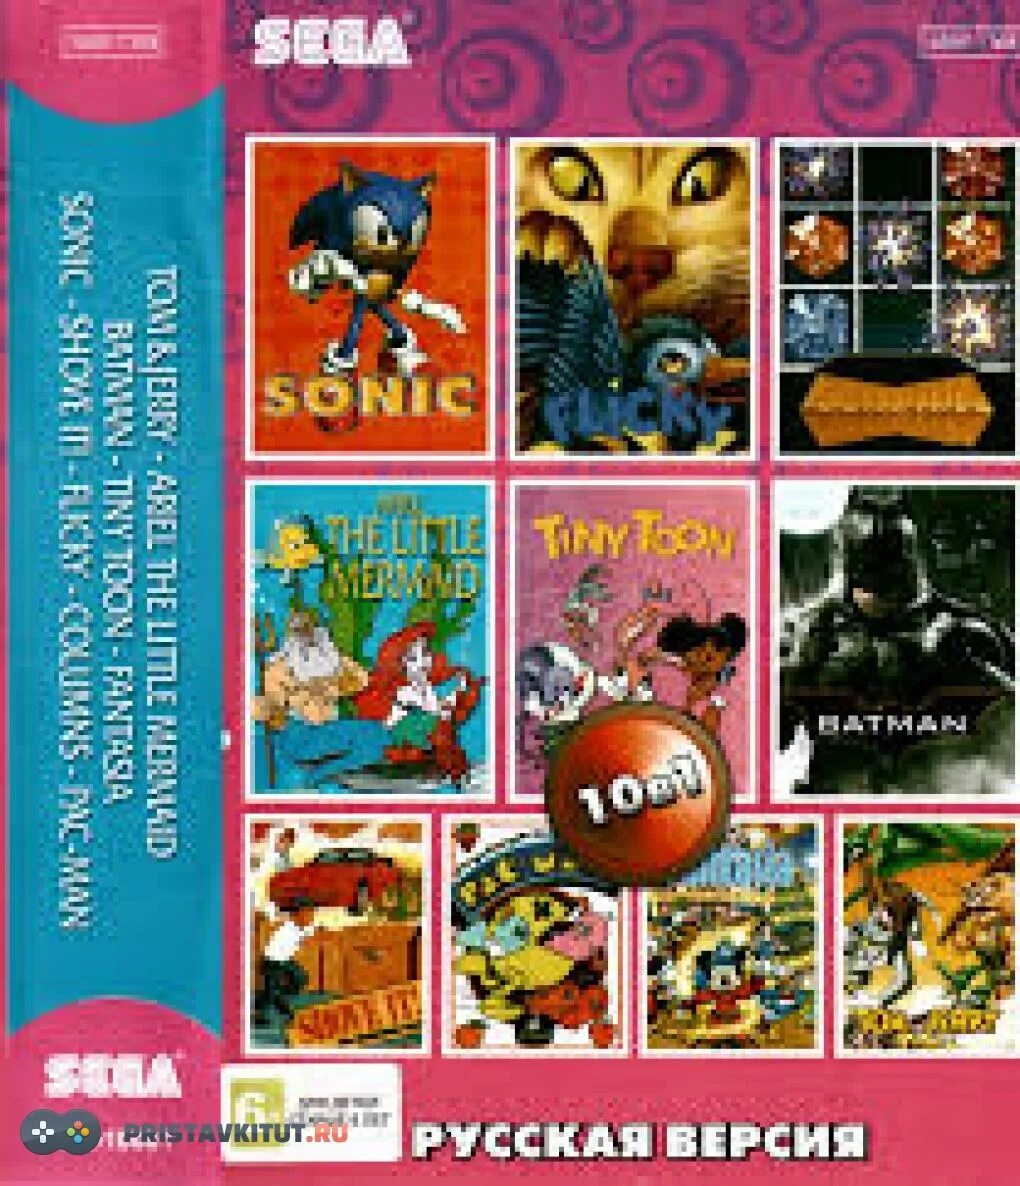 Том 1 версия. Картриджи для сега сборник 10 в 1. Fantasia Sega картридж. Картридж Sega a-10001. Картридж для сеги Sonic 4.